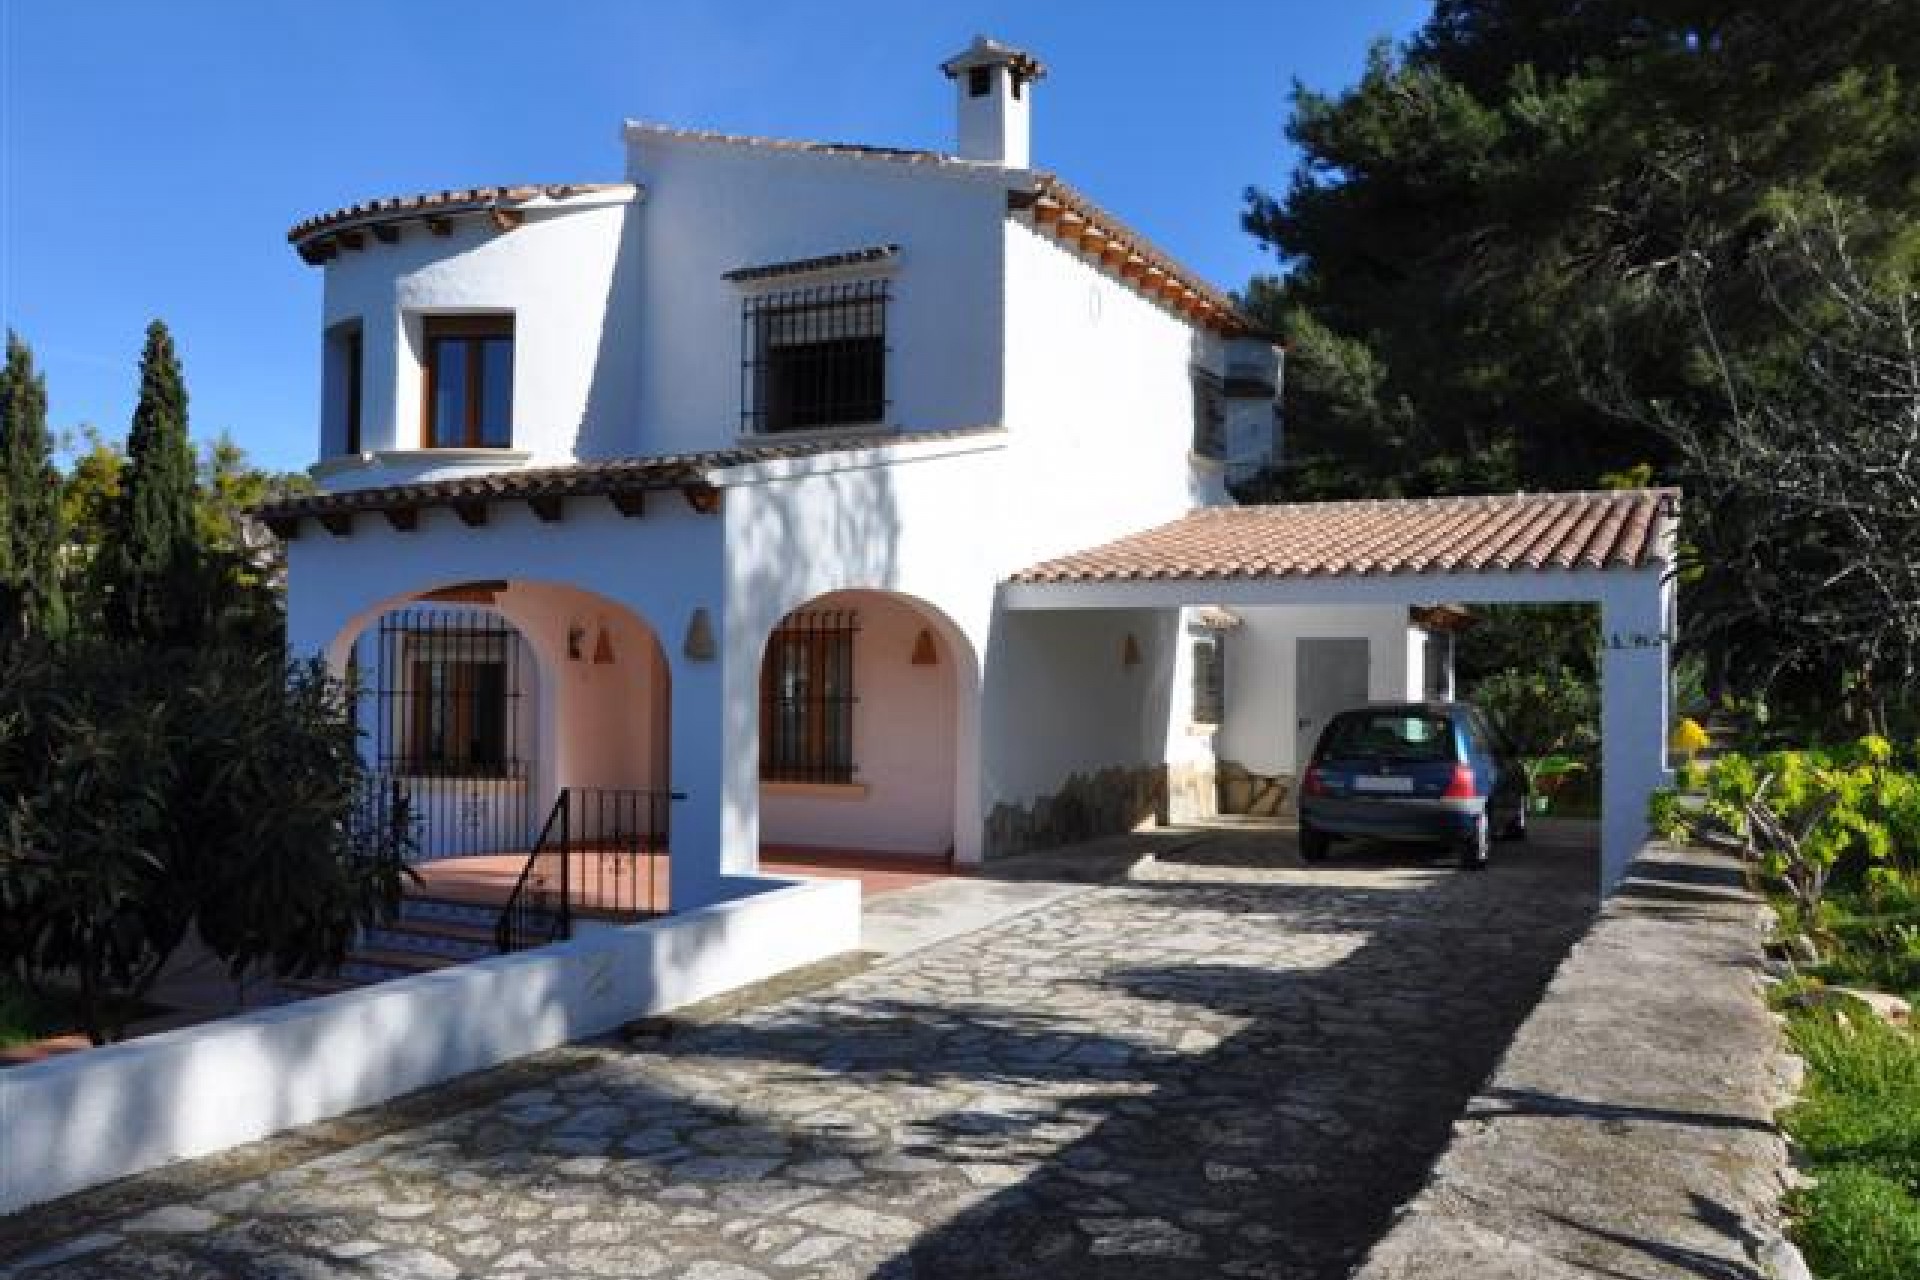  Villa zum Verkauf in Moraira, Fuß in die Stadt